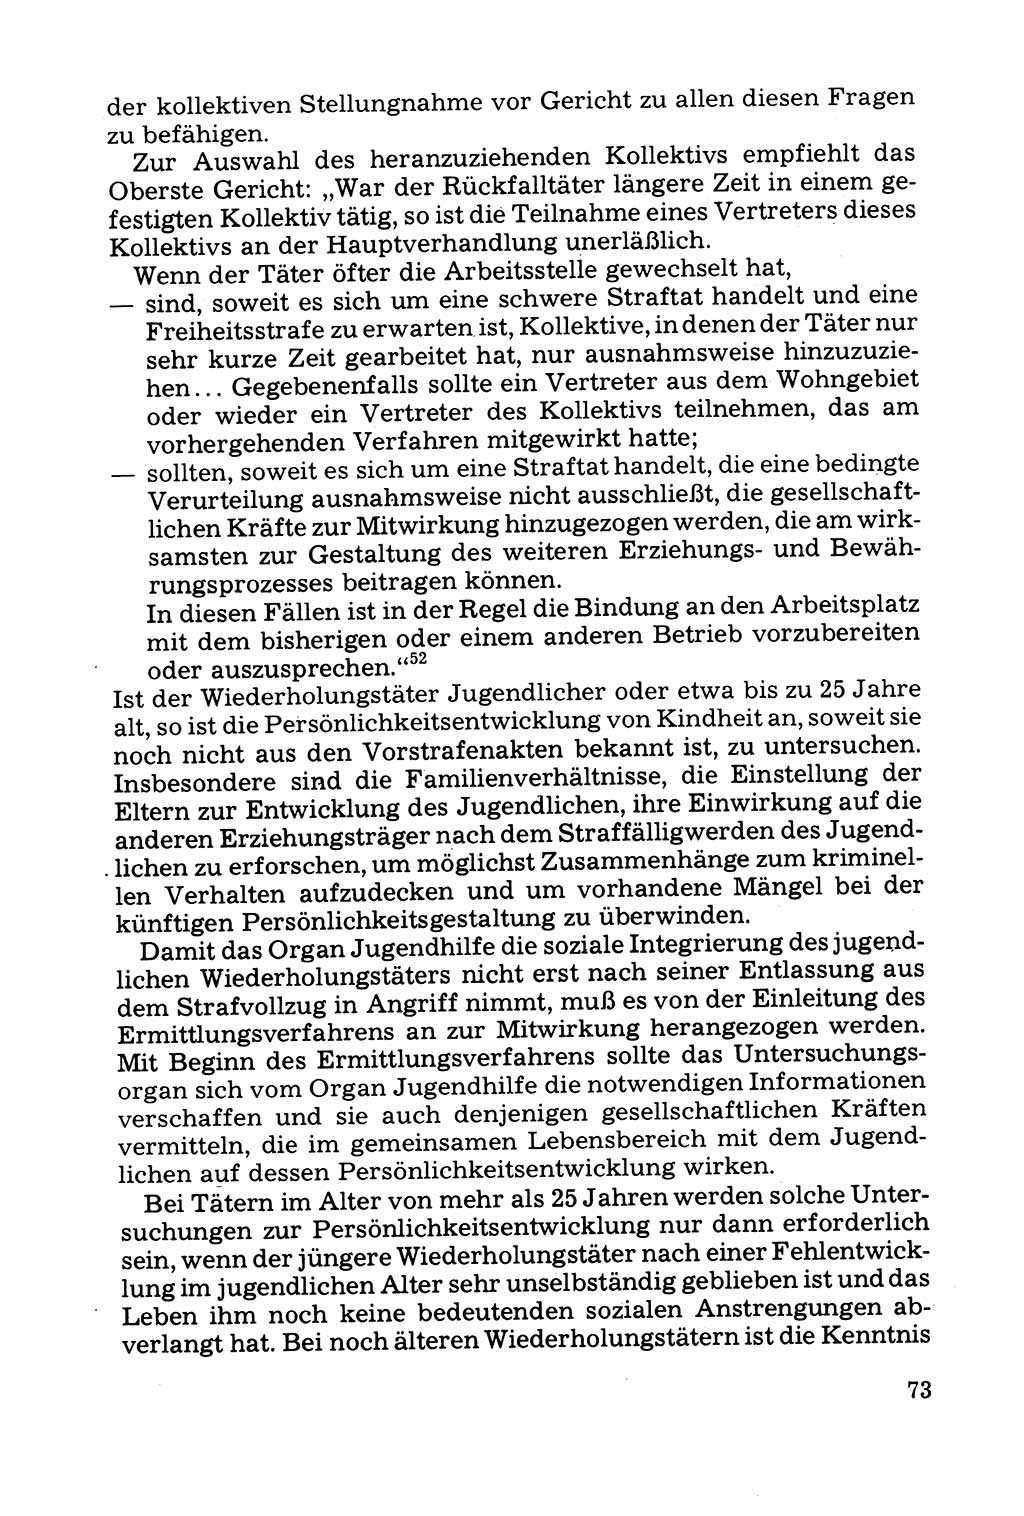 Grundfragen der Beweisführung im Ermittlungsverfahren [Deutsche Demokratische Republik (DDR)] 1980, Seite 73 (Bws.-Fhrg. EV DDR 1980, S. 73)